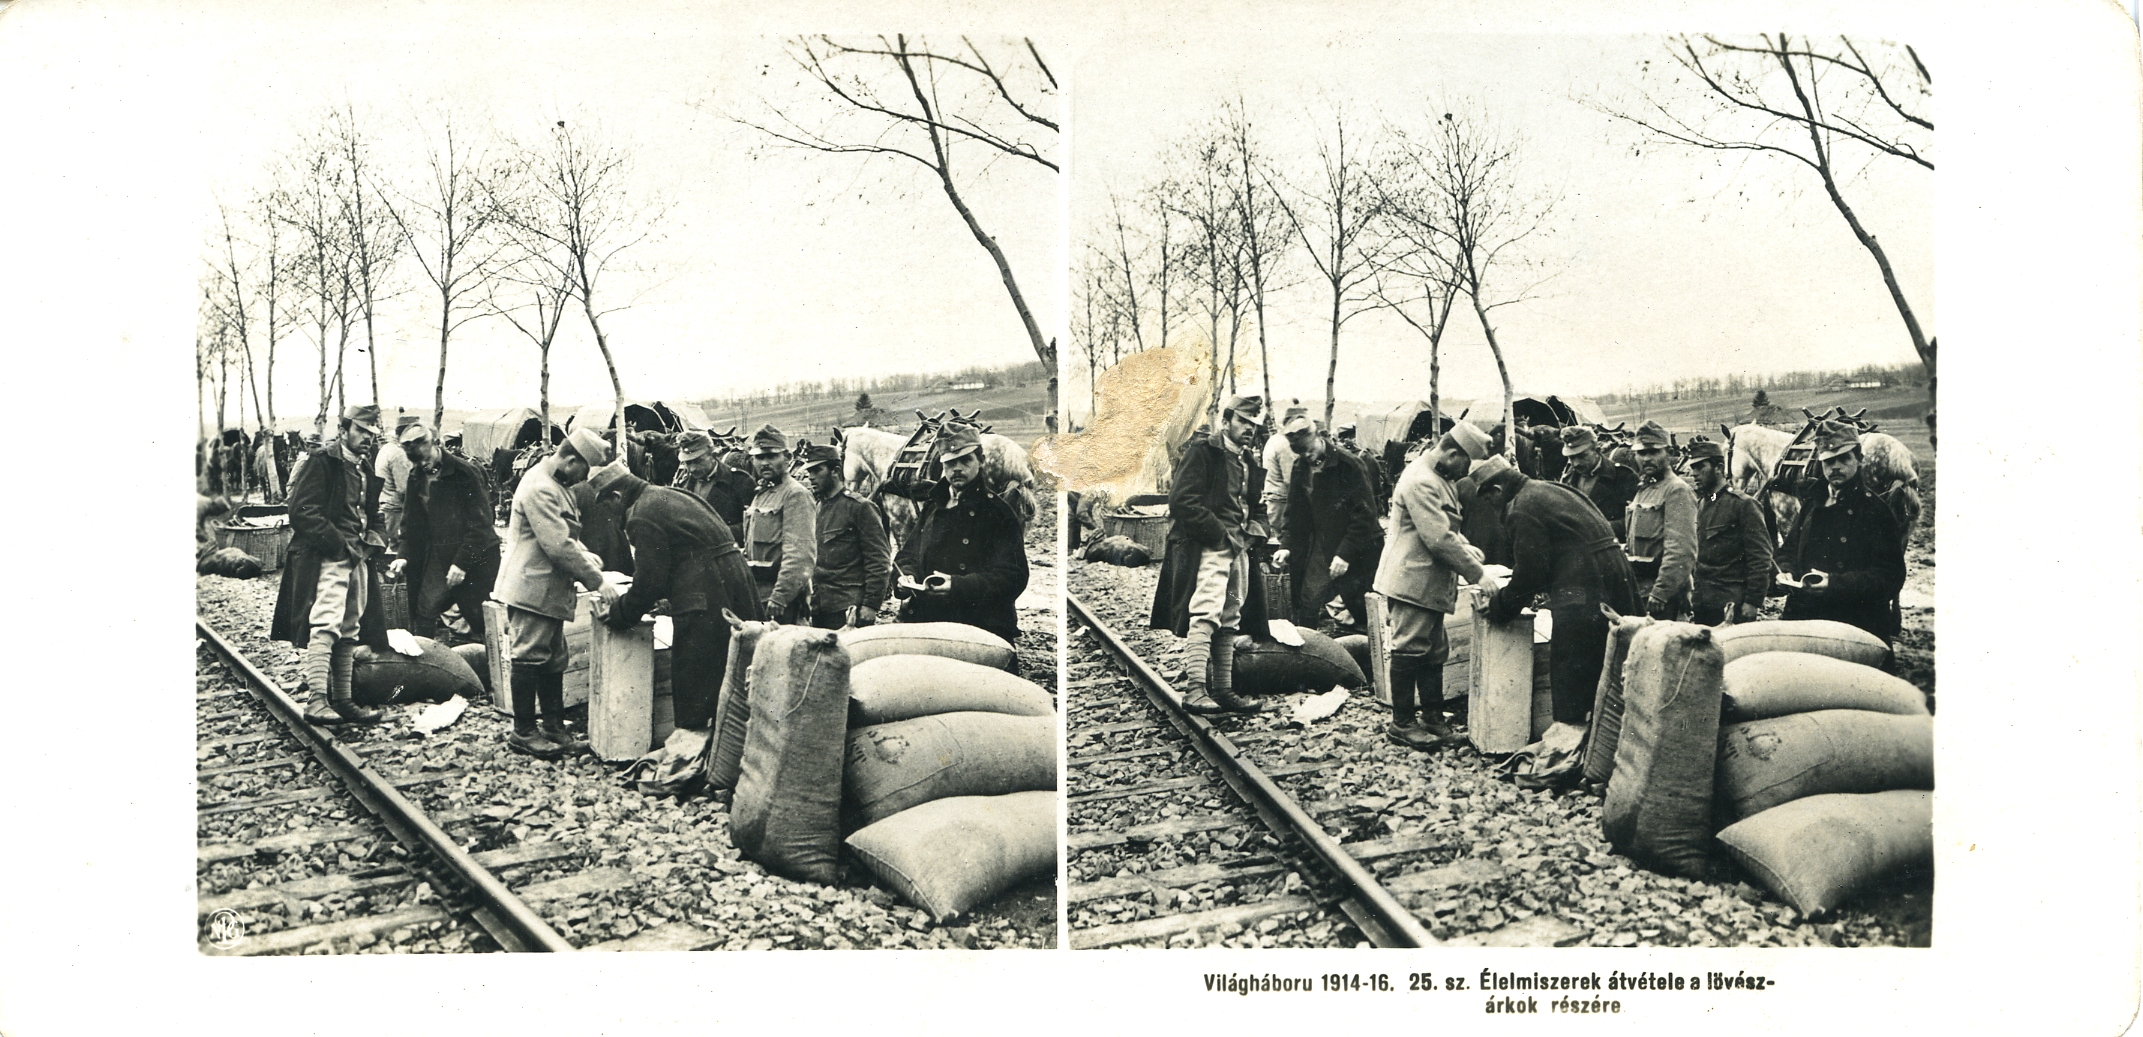 "Élemiszerek átvétele a lövészárkok részére" - Delivery of food for the trenches.